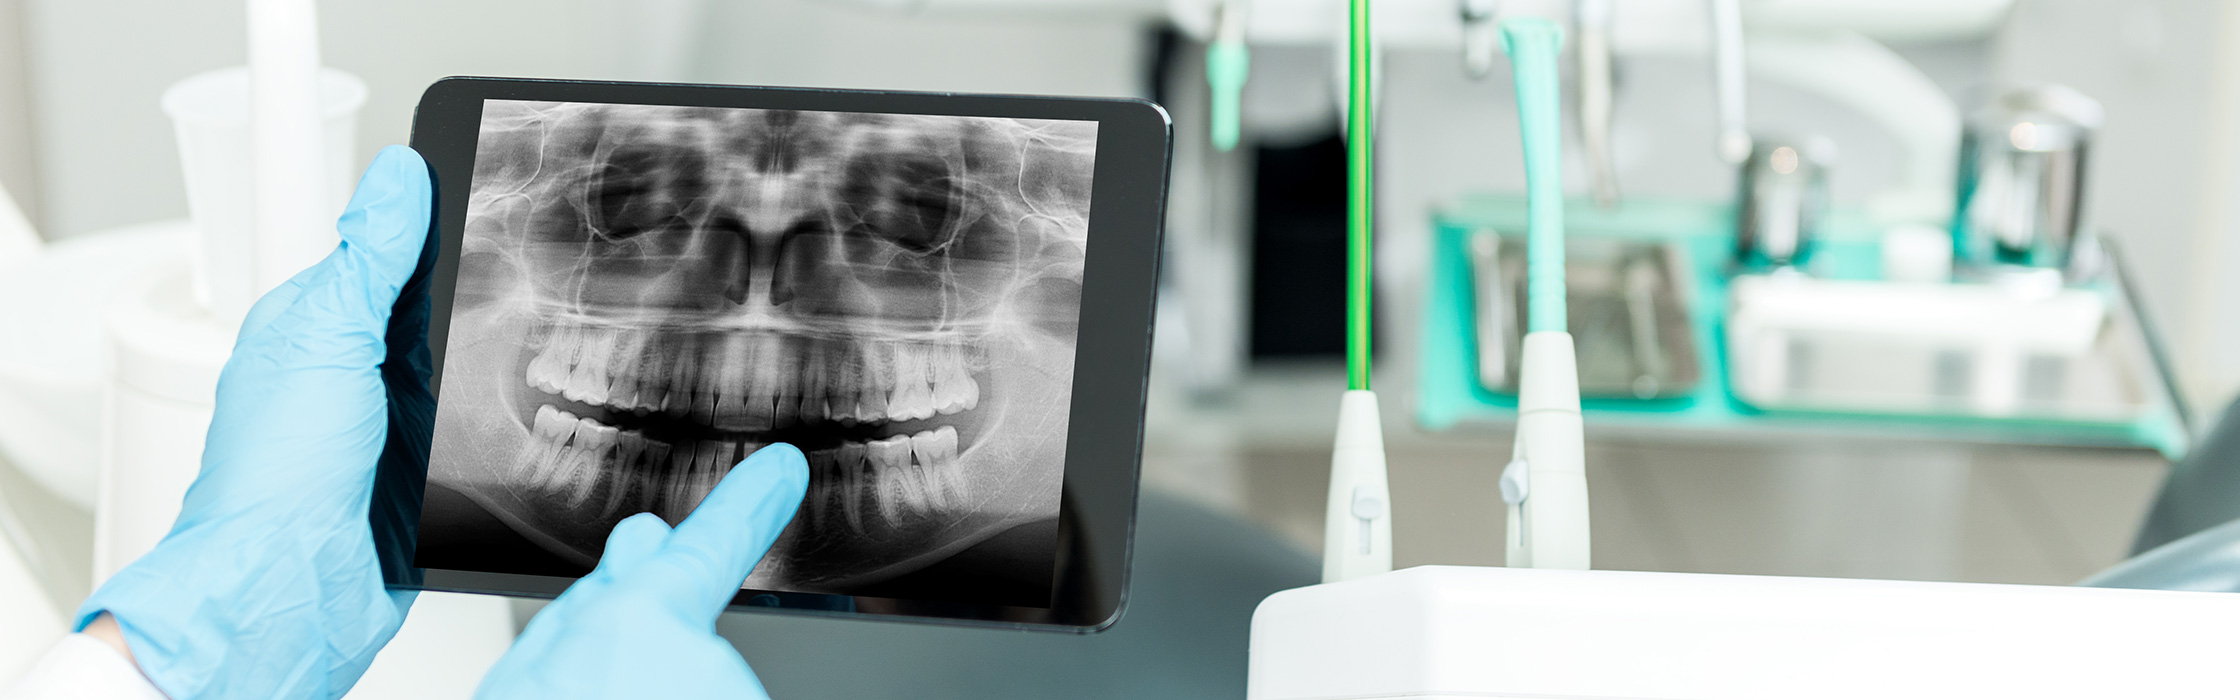 Oralchirurgie: Höchste Präzision in der Zahnmedizin bei komplizierten Eingriffen